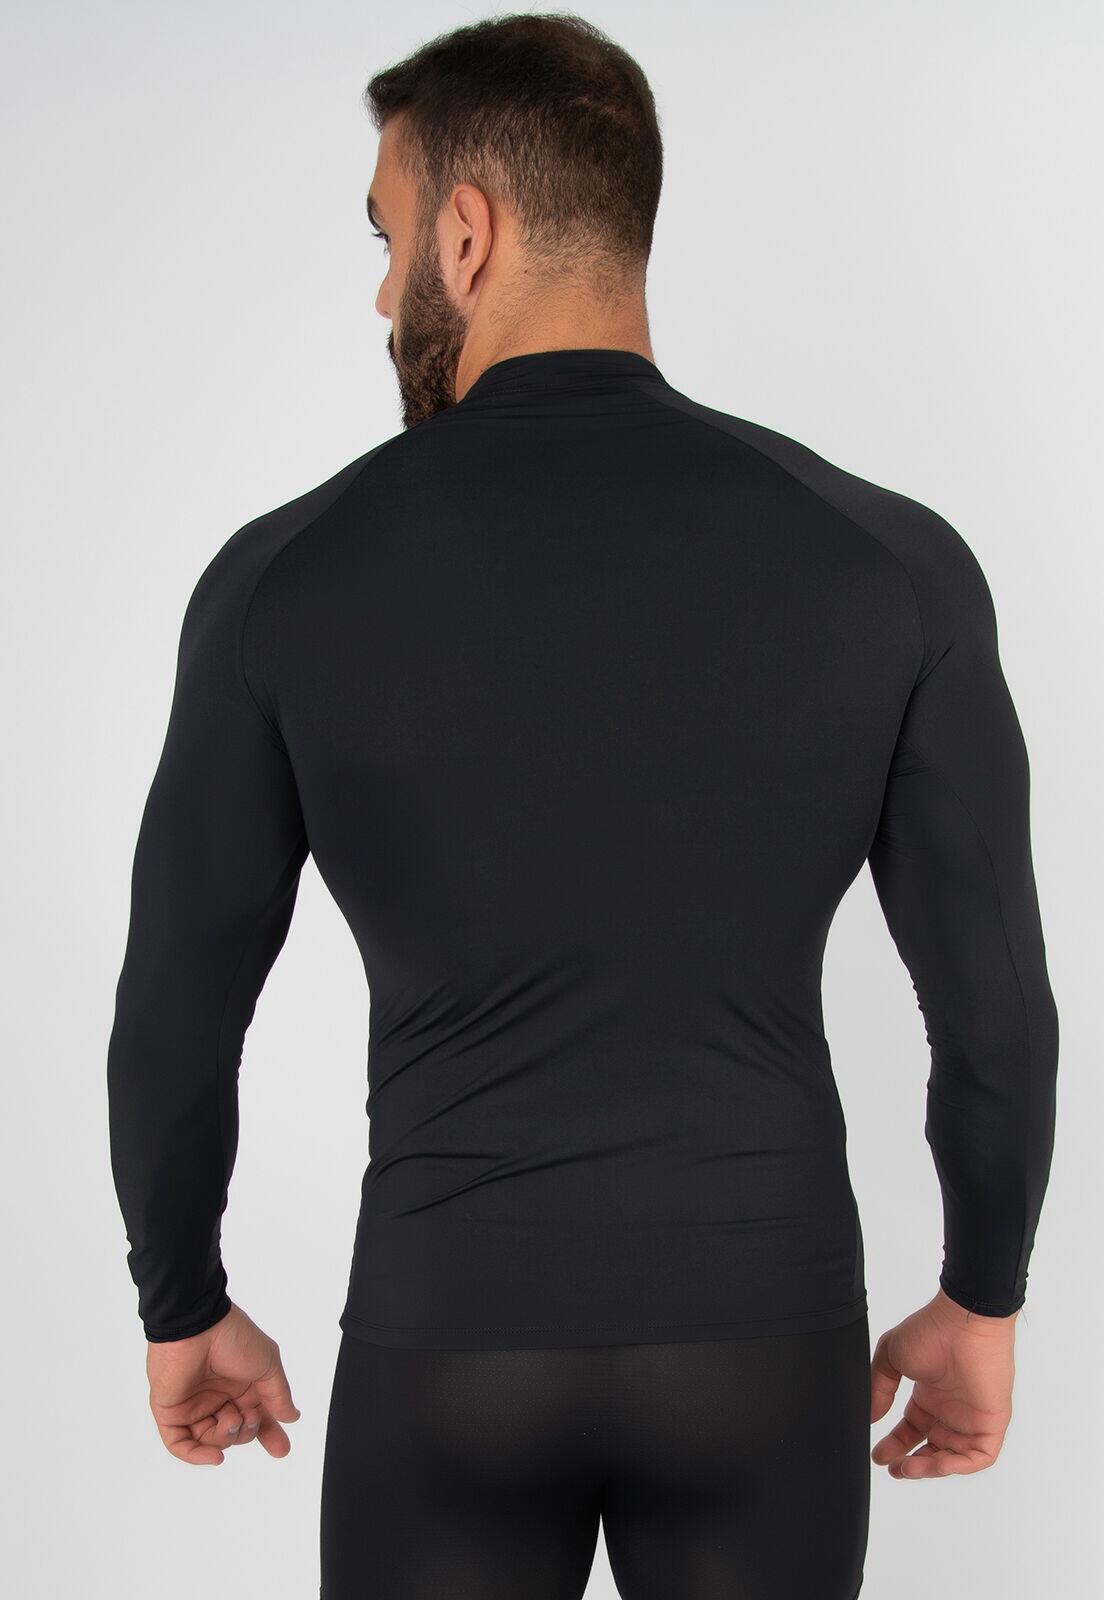 Comprar Cropped Fitness Serra e Mar Fitness Camiseta Regata Frases - a  partir de R$18,90 - Serra e Mar Modas